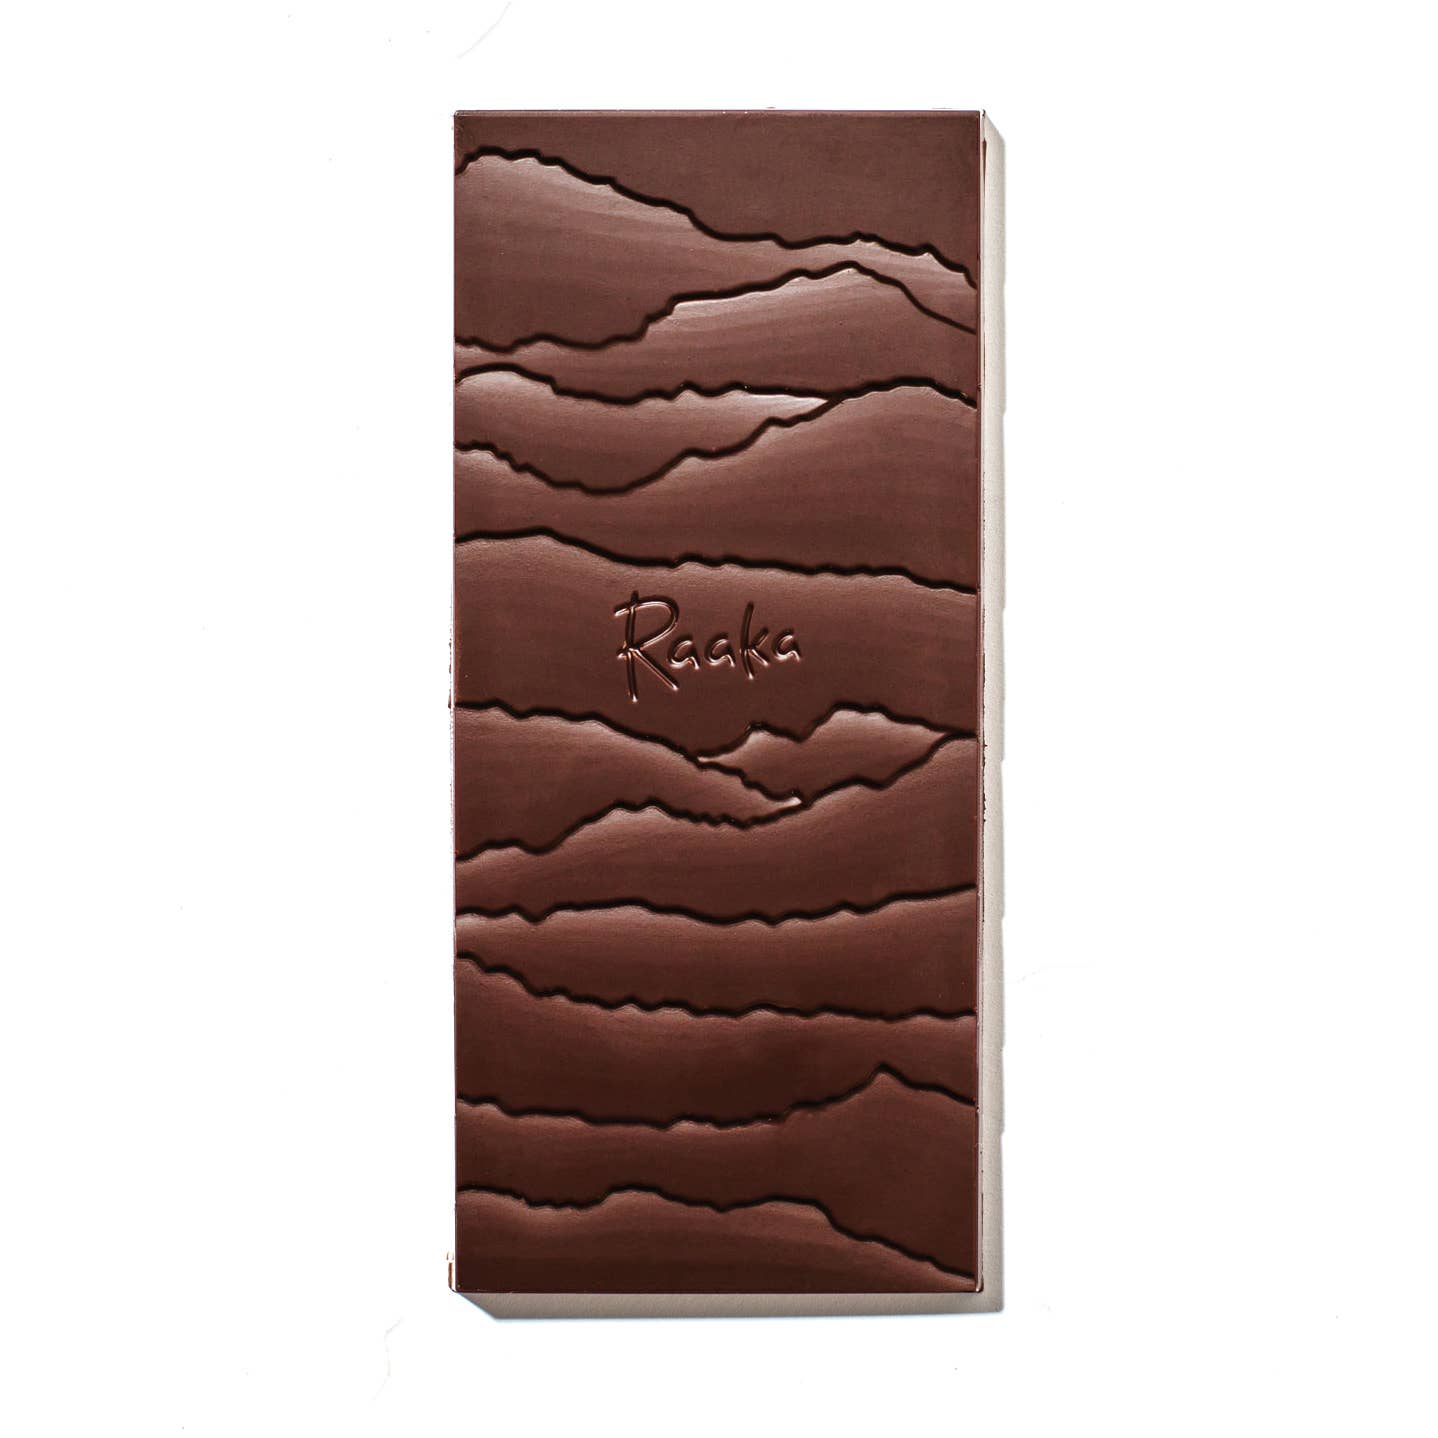 Raaka Unroasted Cacao Bars - Hibiscus Cinnamon (*KNOVG), 50g/1.8oz